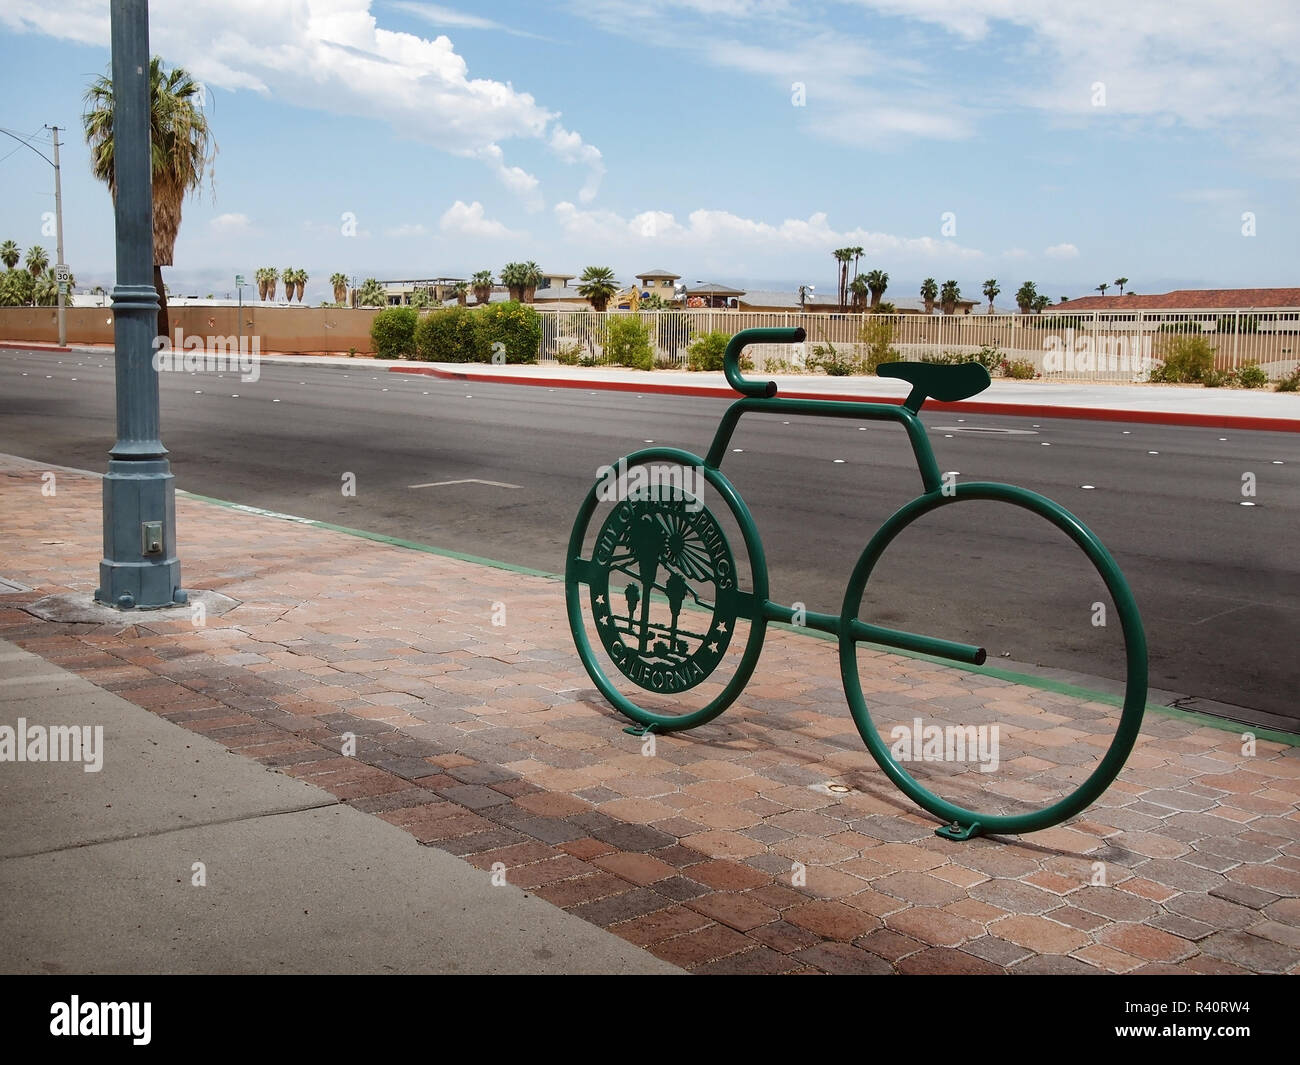 PALM SPRINGS, CA - 18. JULI 2018: Ein modernes Bike Rack neben einer öffentlichen Straße in Palm Springs, Kalifornien, Funktionen sowohl als öffentliche Kunst und ein Ort für Stockfoto